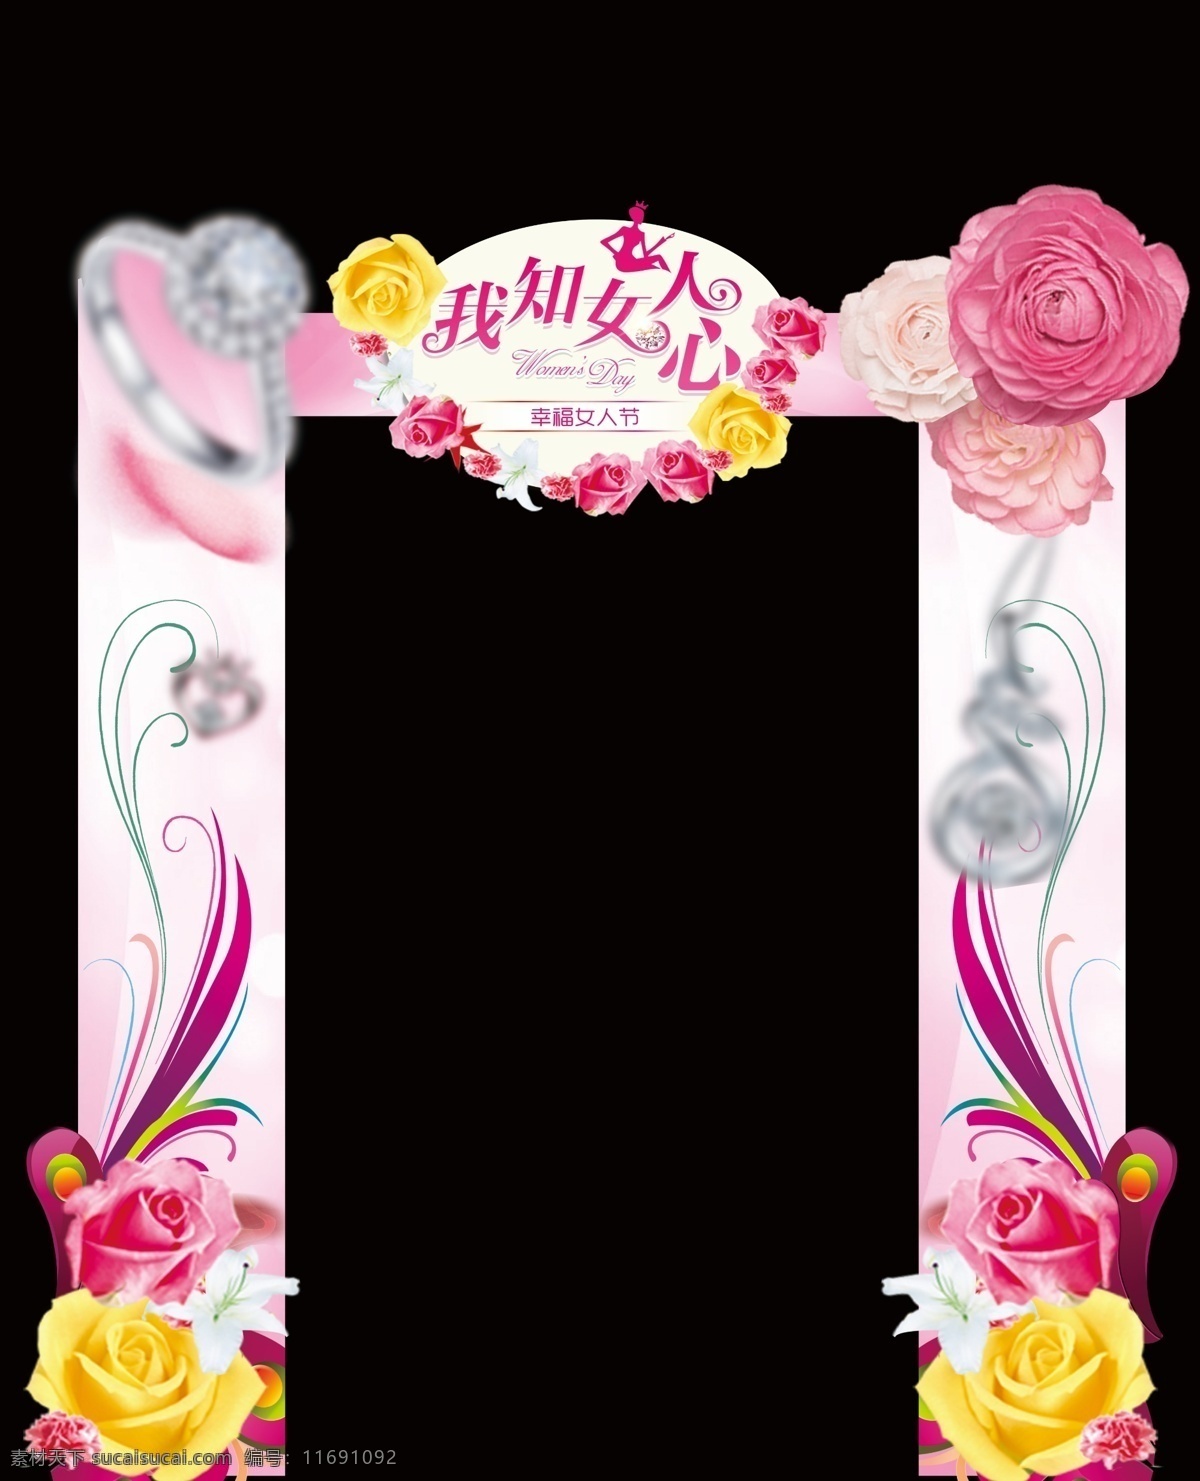 妇女节 造型门38节 鲜花造型门 异形门 装饰 节日促销 宣传打折